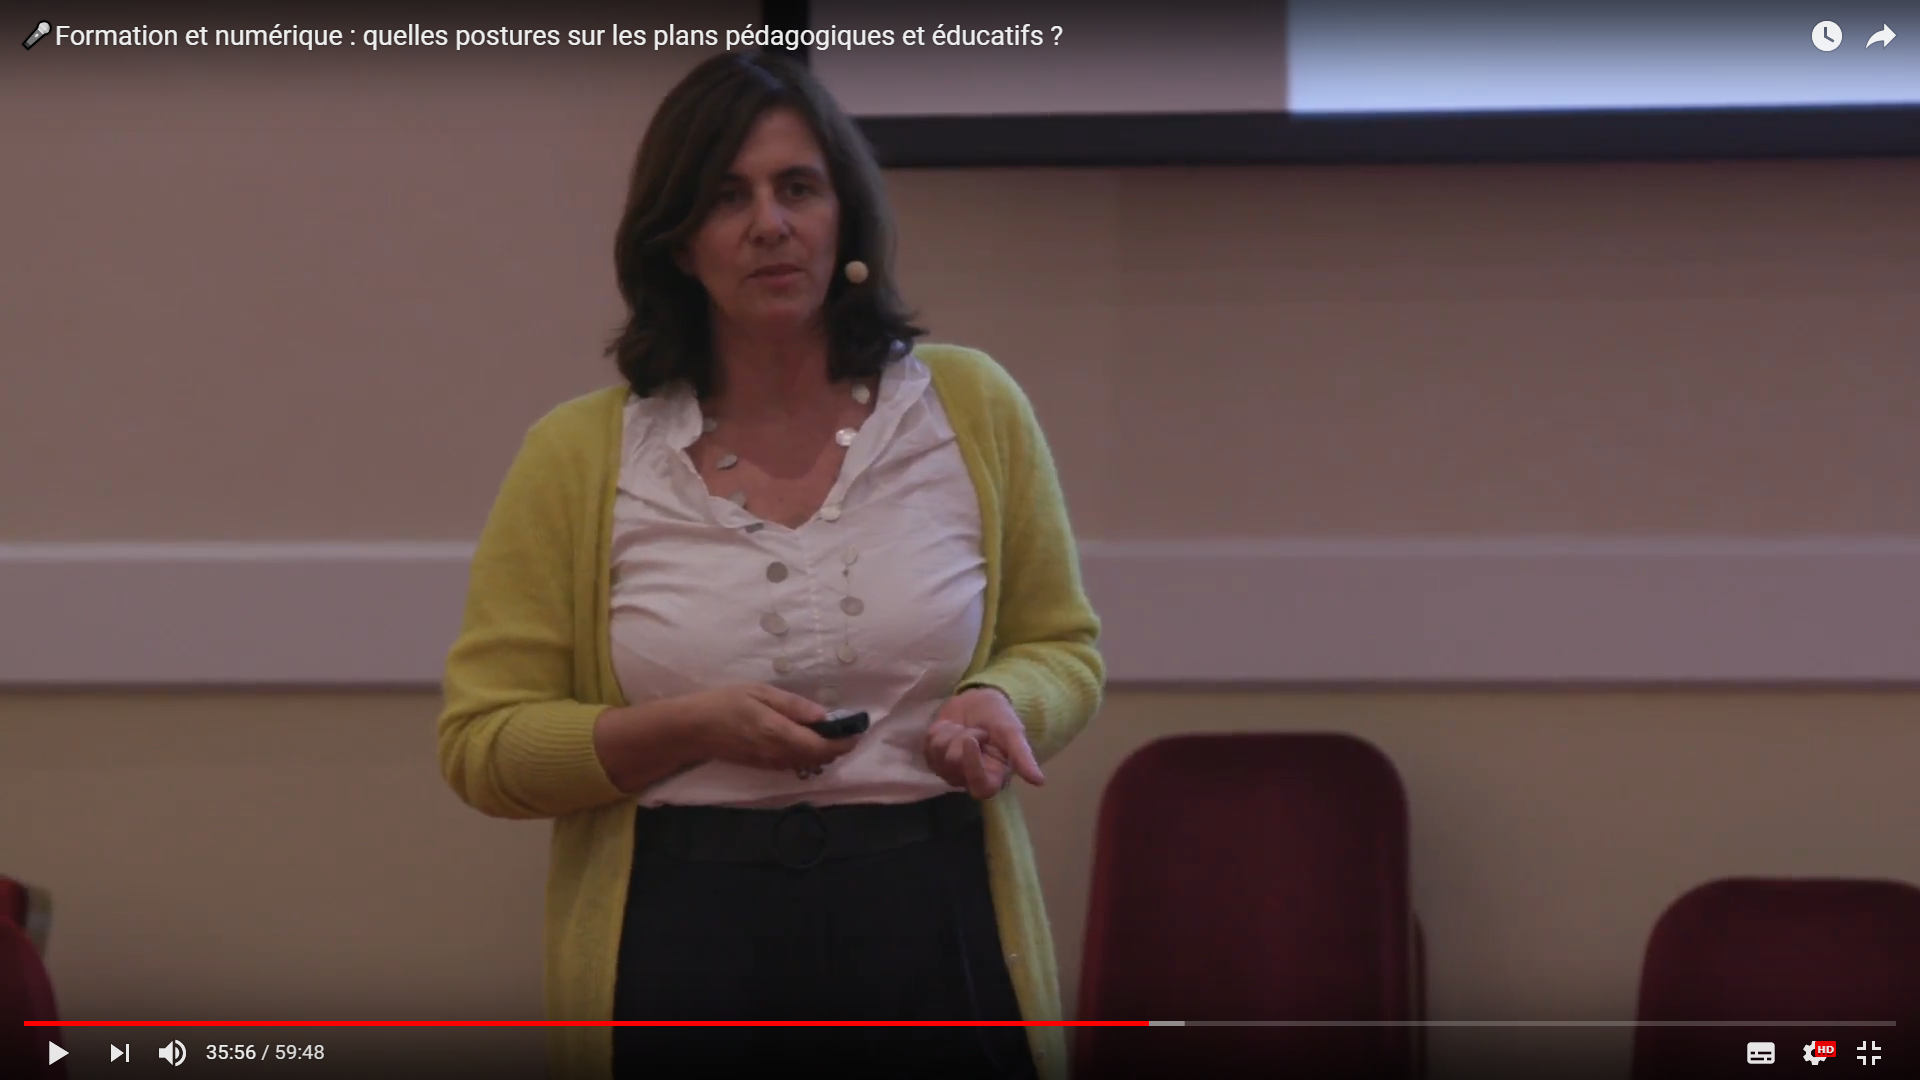 Vidéo sur les postures sur les plans pédagogiques et éducatifs